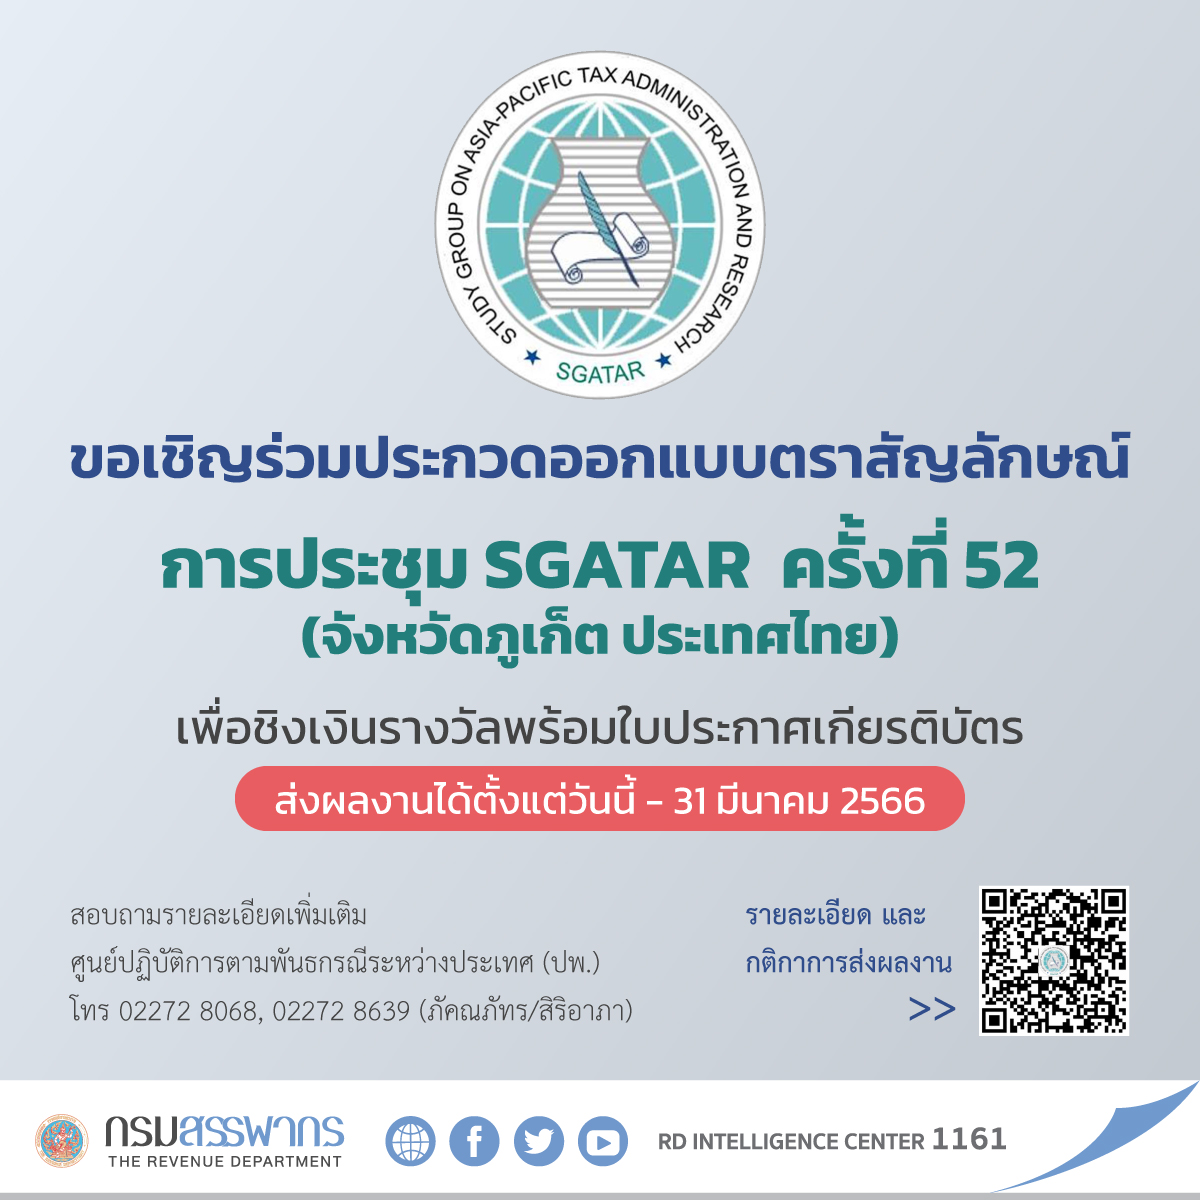 ขอเชิญร่วมประกวดออกแบบตราสัญลักษณ์ การประชุม SGATAR ครั้งที่ 52 (จังหวัดภูเก็ต ประเทศไทย) ส่งผลงานได้ตั้งแต่วันนี้ - 31 มีนาคม 66